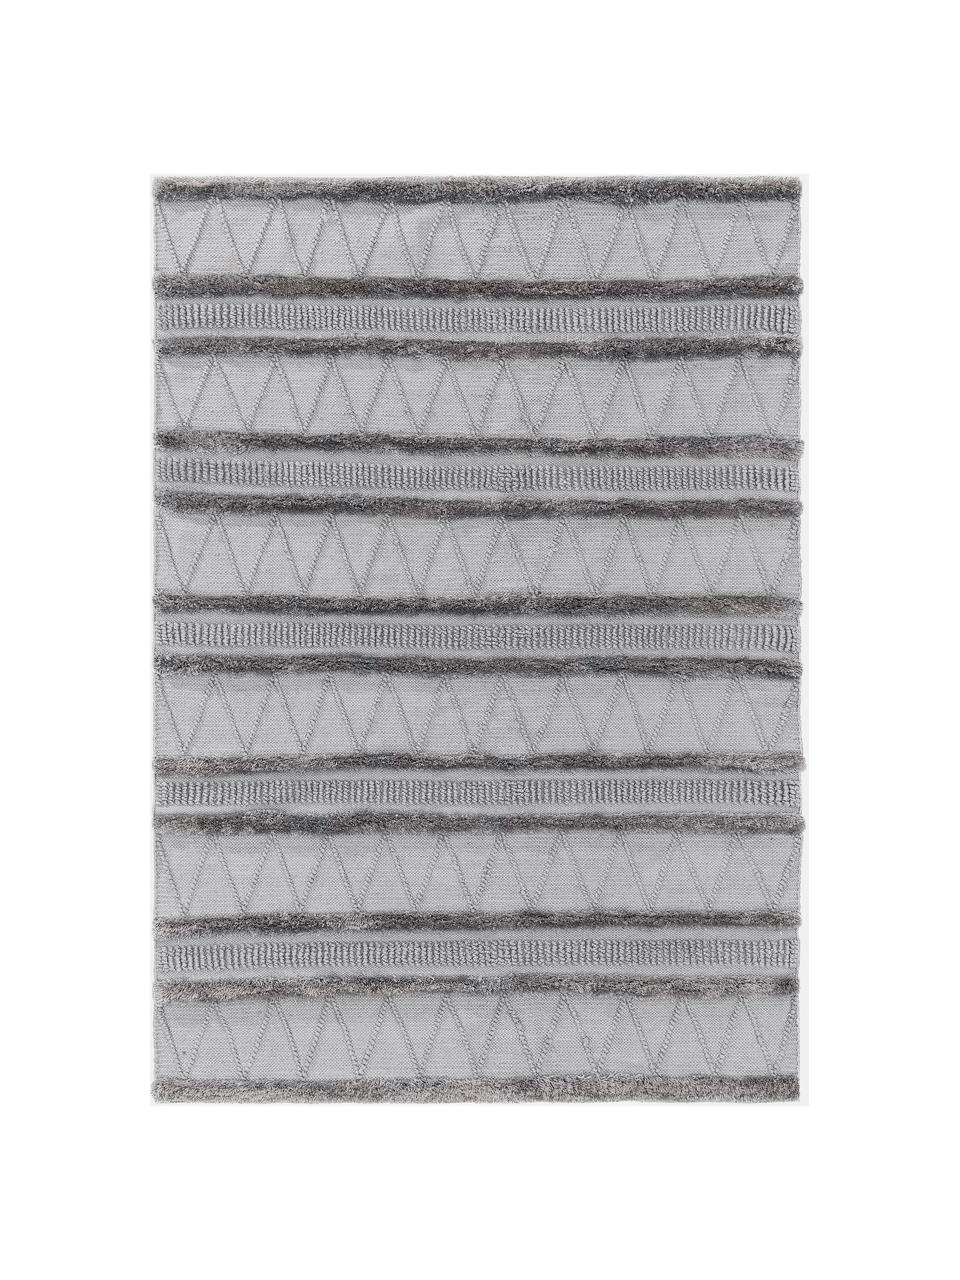 Ethno In- & Outdoor-Teppich Toni in Grau mit Hoch-Tief-Struktur, 100% Polyester (recyceltes PET), Grau, B 80 x L 150 cm (Größe XS)